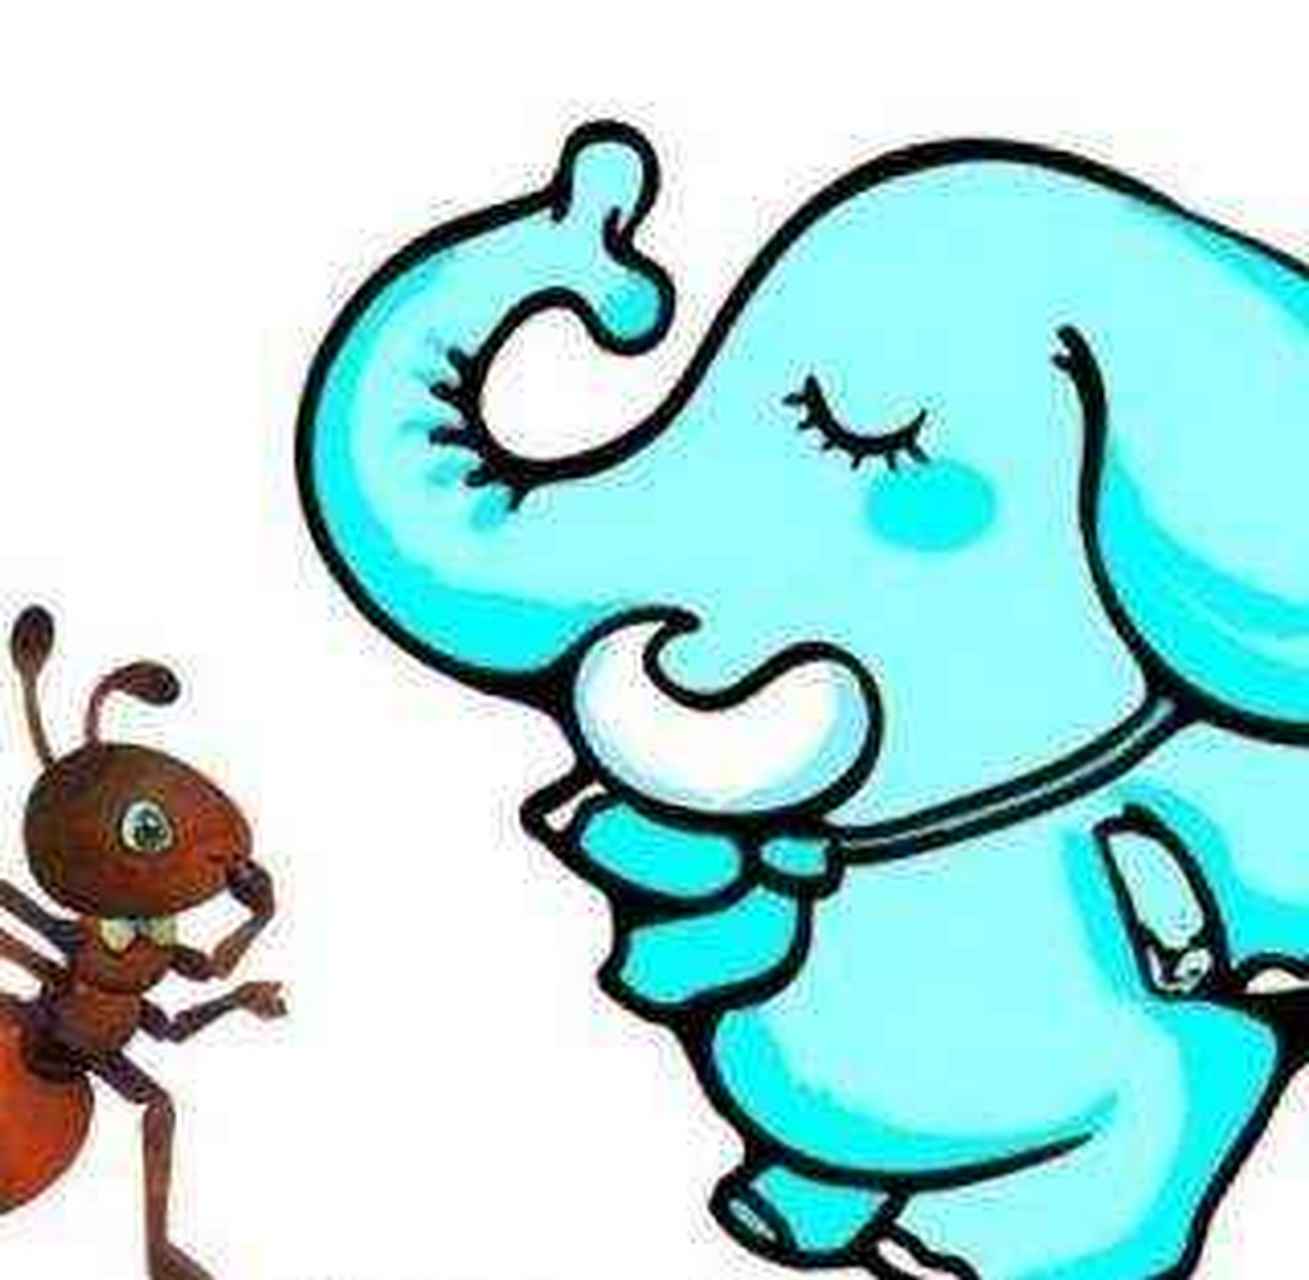 搞笑集结令 蚂蚁和大象结婚了,可是没几天大象就死了,蚂蚁非常伤心